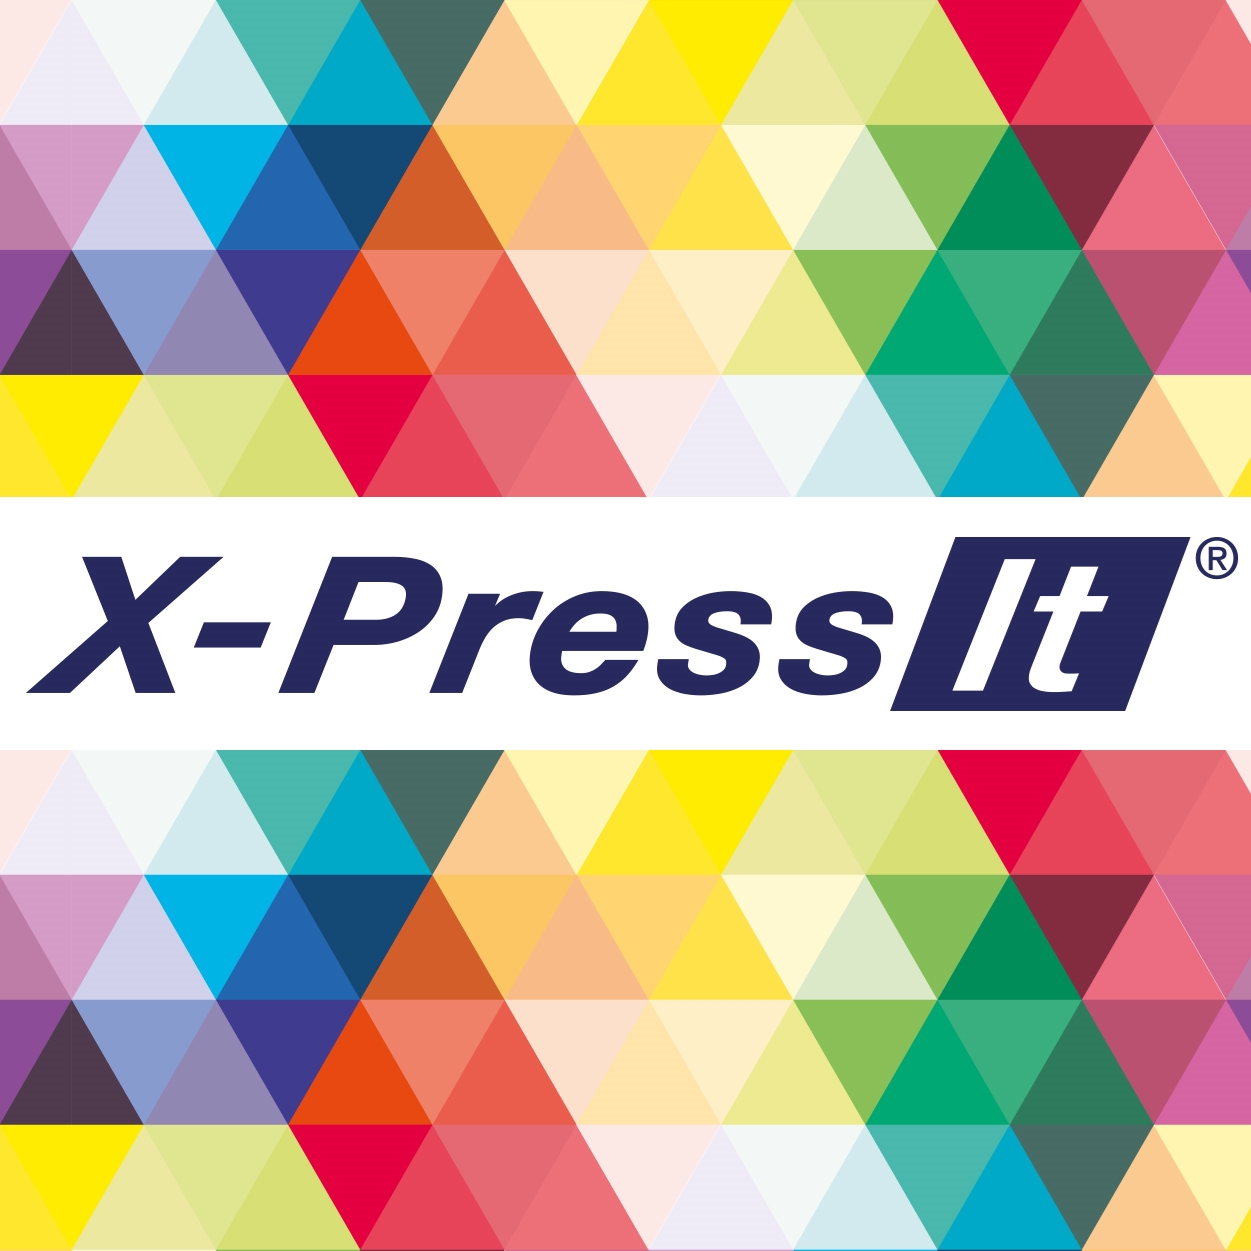 X-Press It New Look